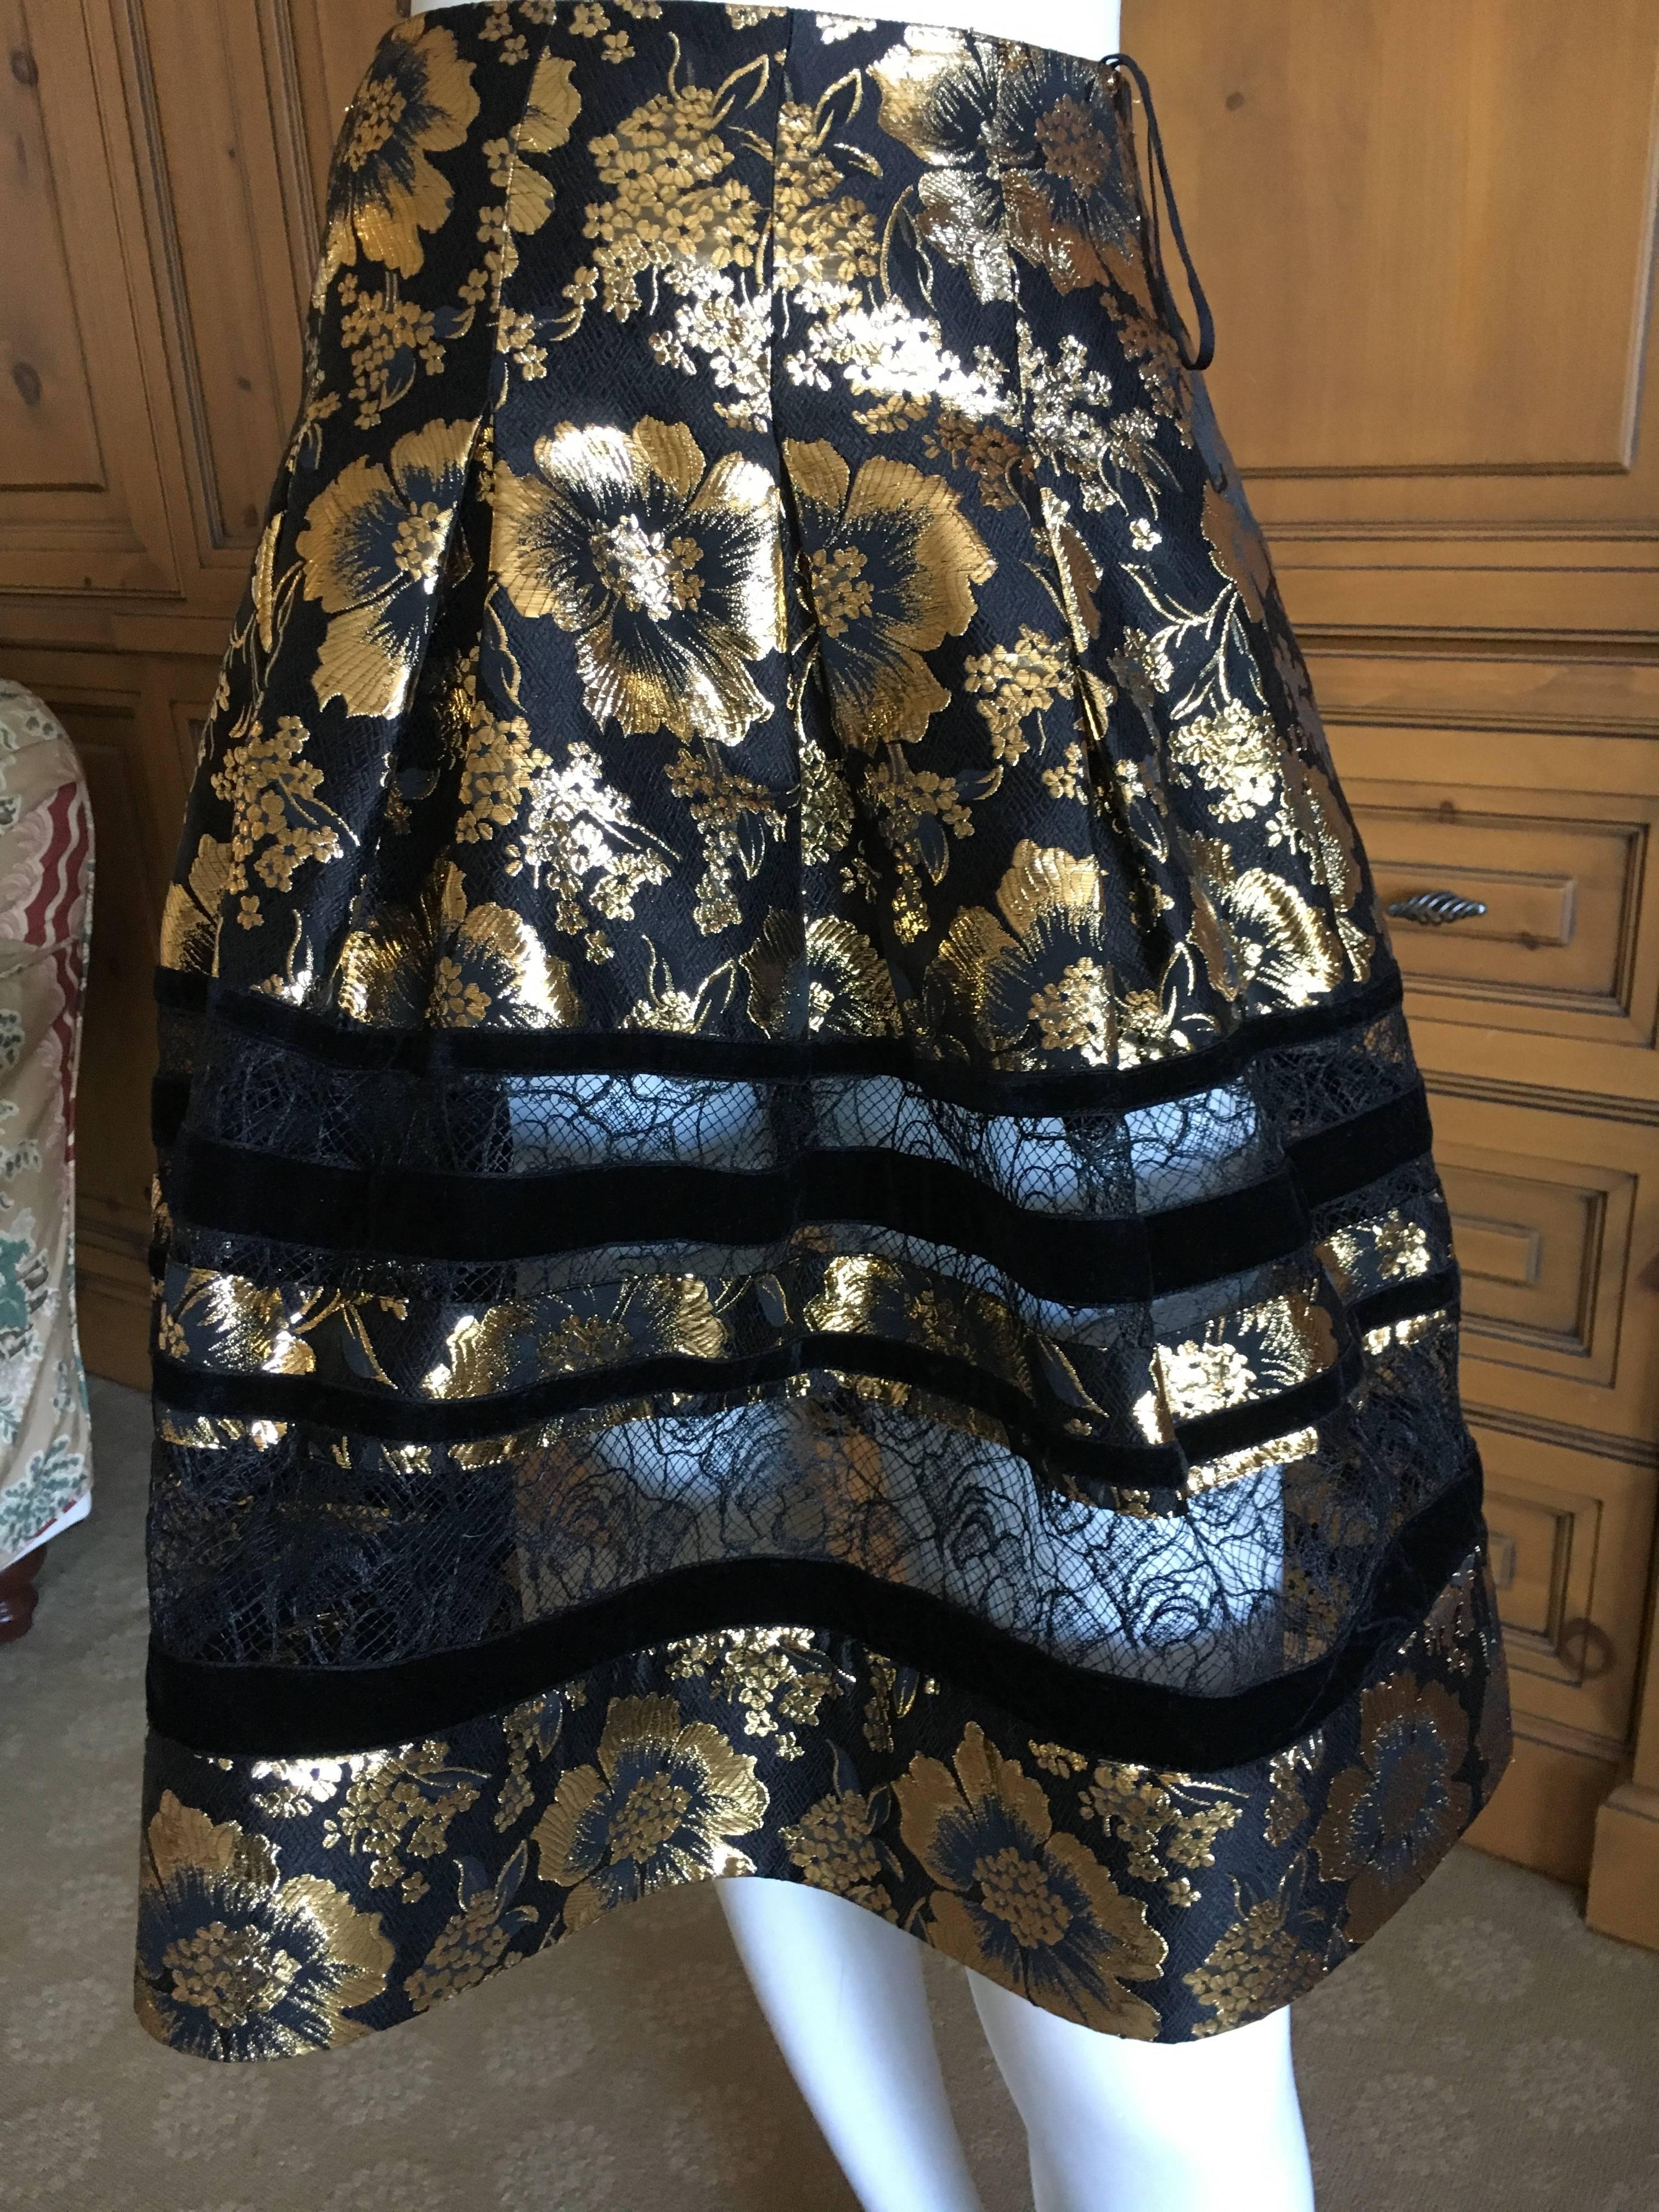 Oscar de la Renta Gold and Black Floral Jacquard Skirt Suit.
Size 0 Skirt
Waist 25"
Hips 44"
Lenngth 22"
Jacket size 2
Bust 34"
Waist 26"
Length 23'
Excellent condition